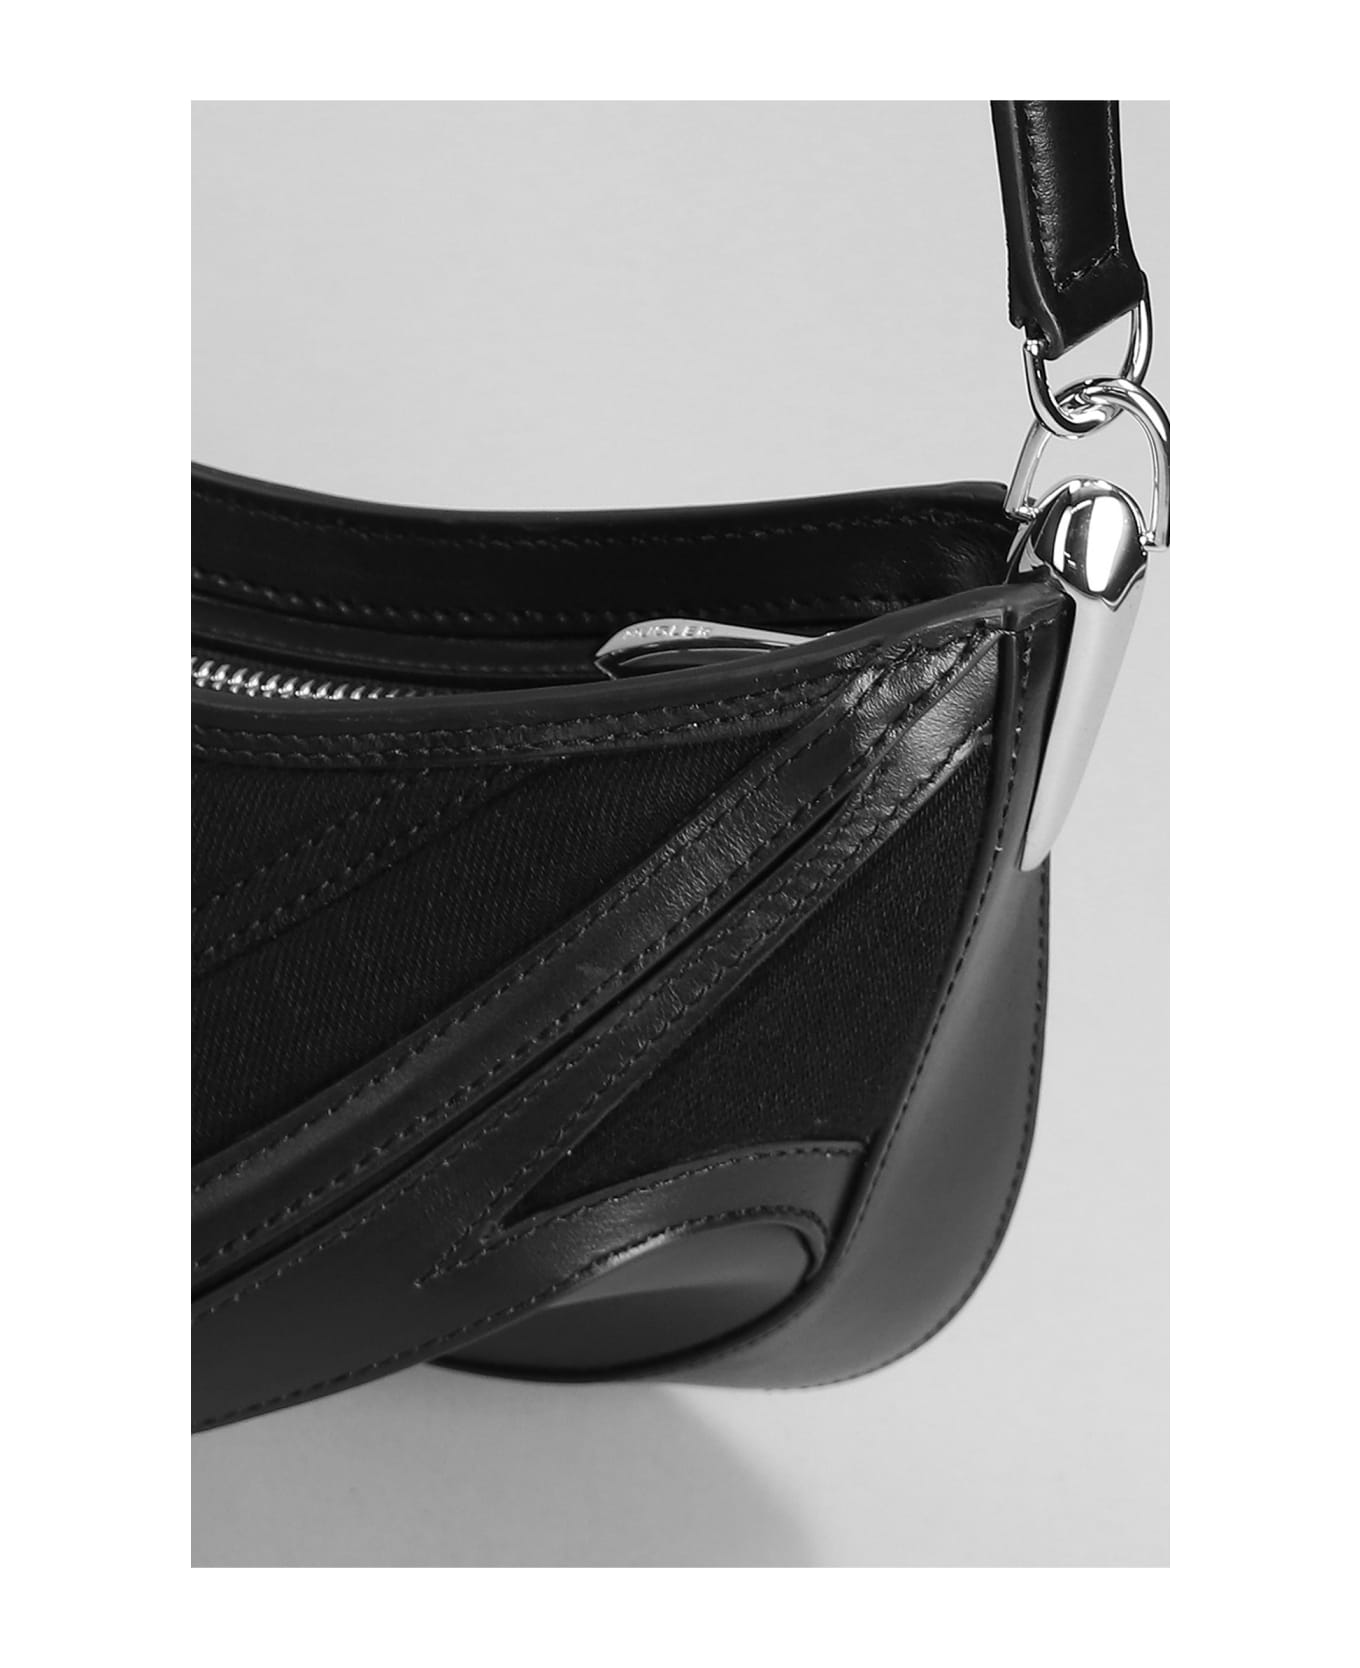 Mugler Shoulder Bag In Black Leather And Fabric - black